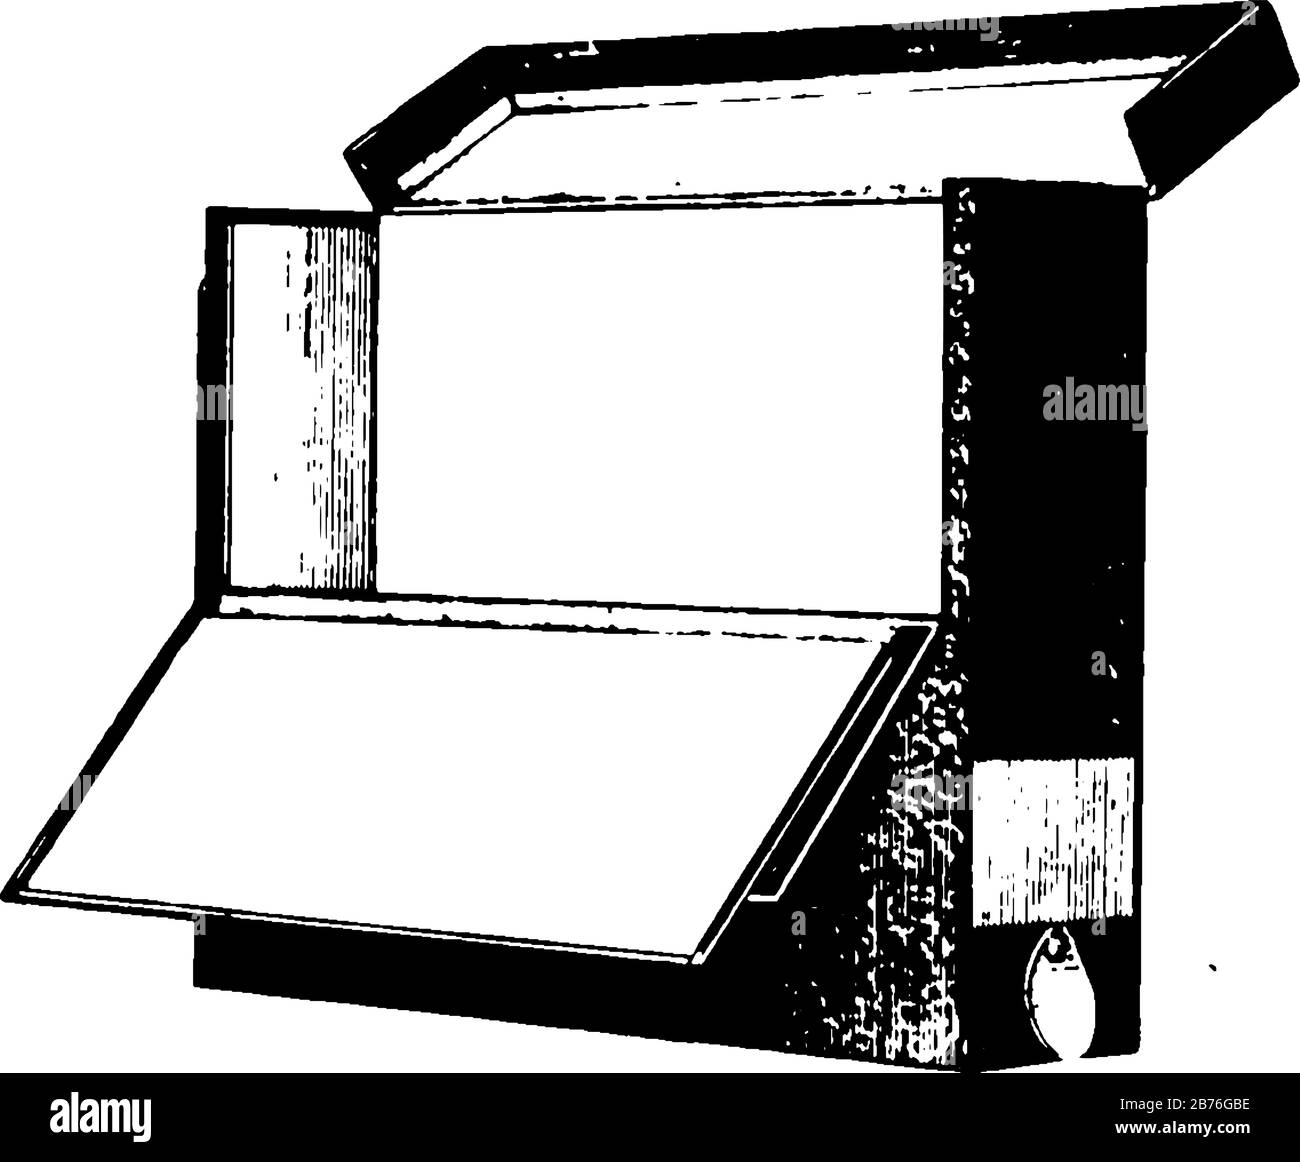 Esta ilustración representa la caja de transferencia que se utiliza para transferir carpetas de archivo, dibujo de líneas vintage o ilustración de grabado. Ilustración del Vector